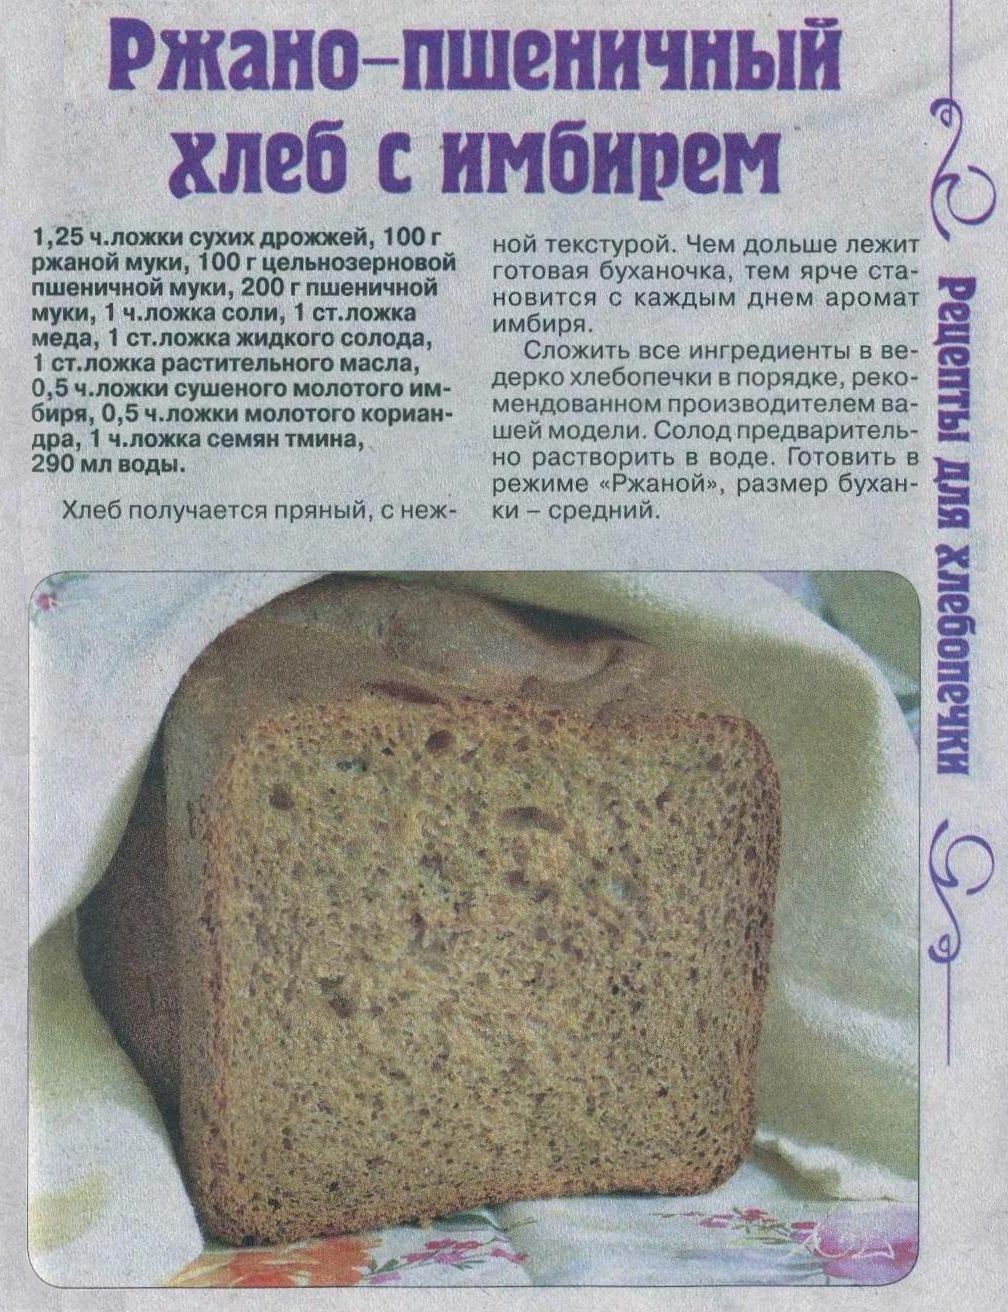 Рецепт ржаного хлеба на закваске в хлебопечке. Рецепт хлеба в хлебопечке. Тесто на хлеб в хлебопечке. Домашний хлеб в хлебопечке. Рецептура ржаного хлеба.